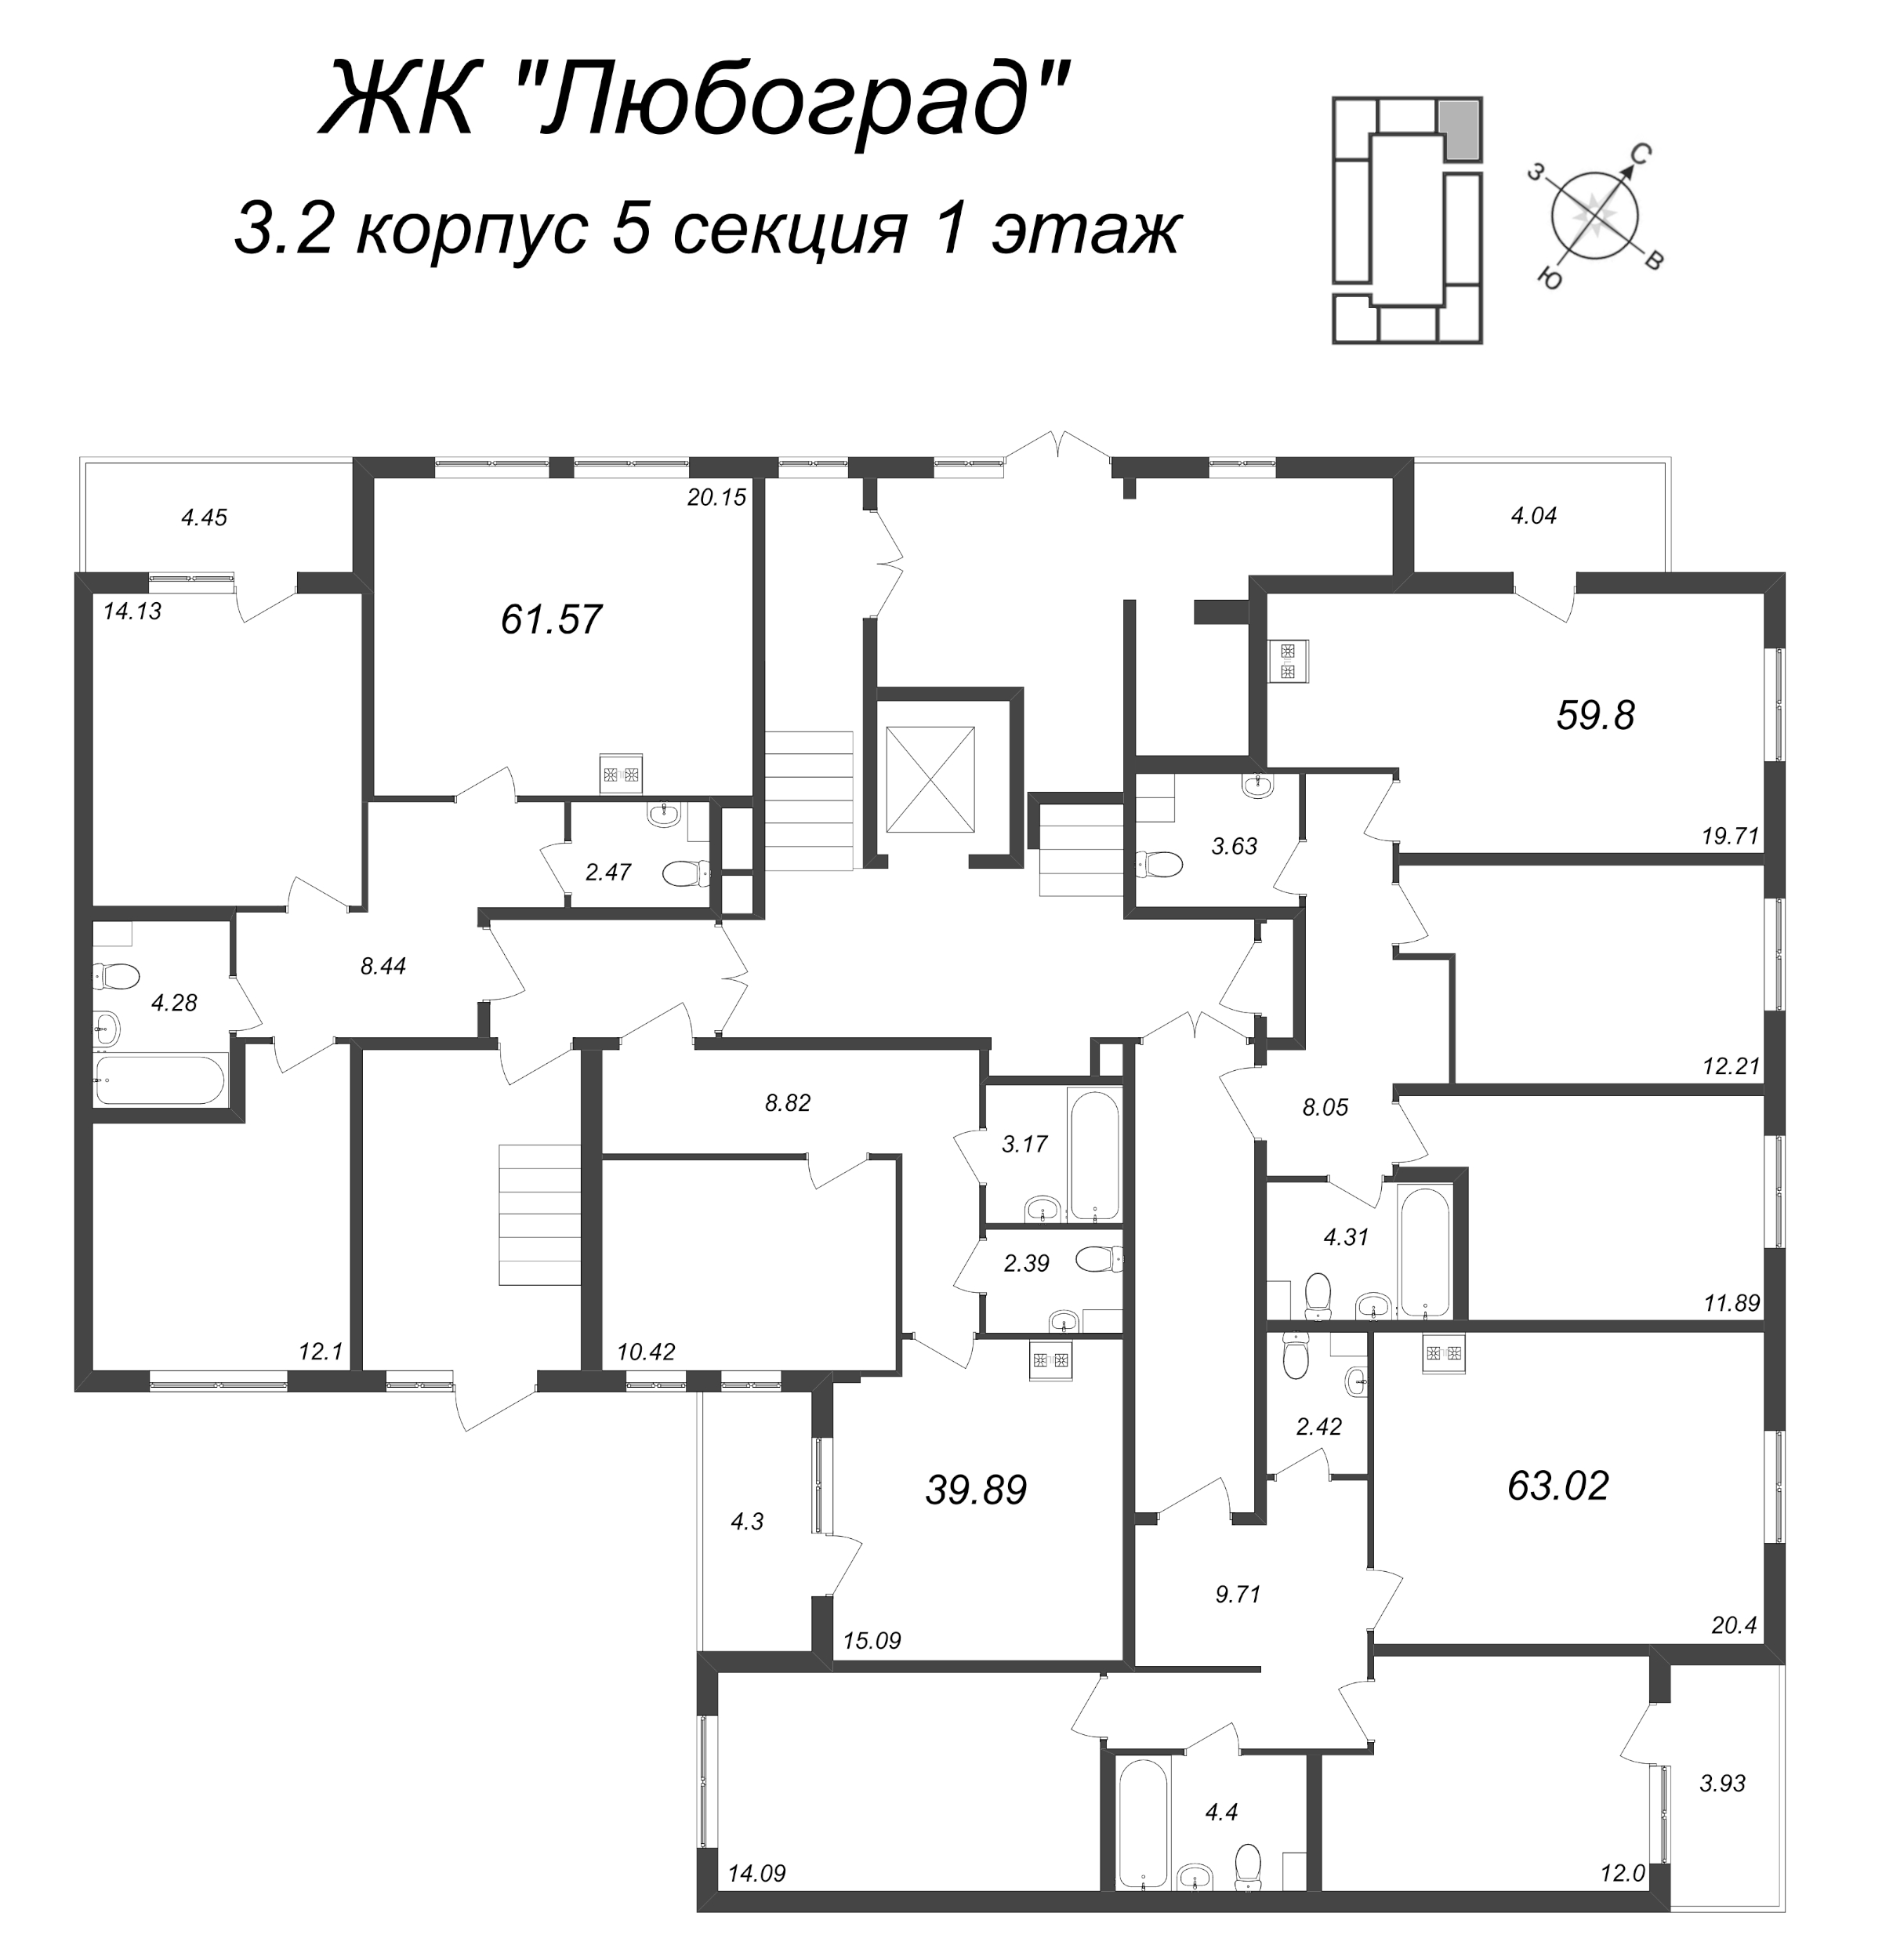 2-комнатная (Евро) квартира, 39.89 м² в ЖК "Любоград" - планировка этажа